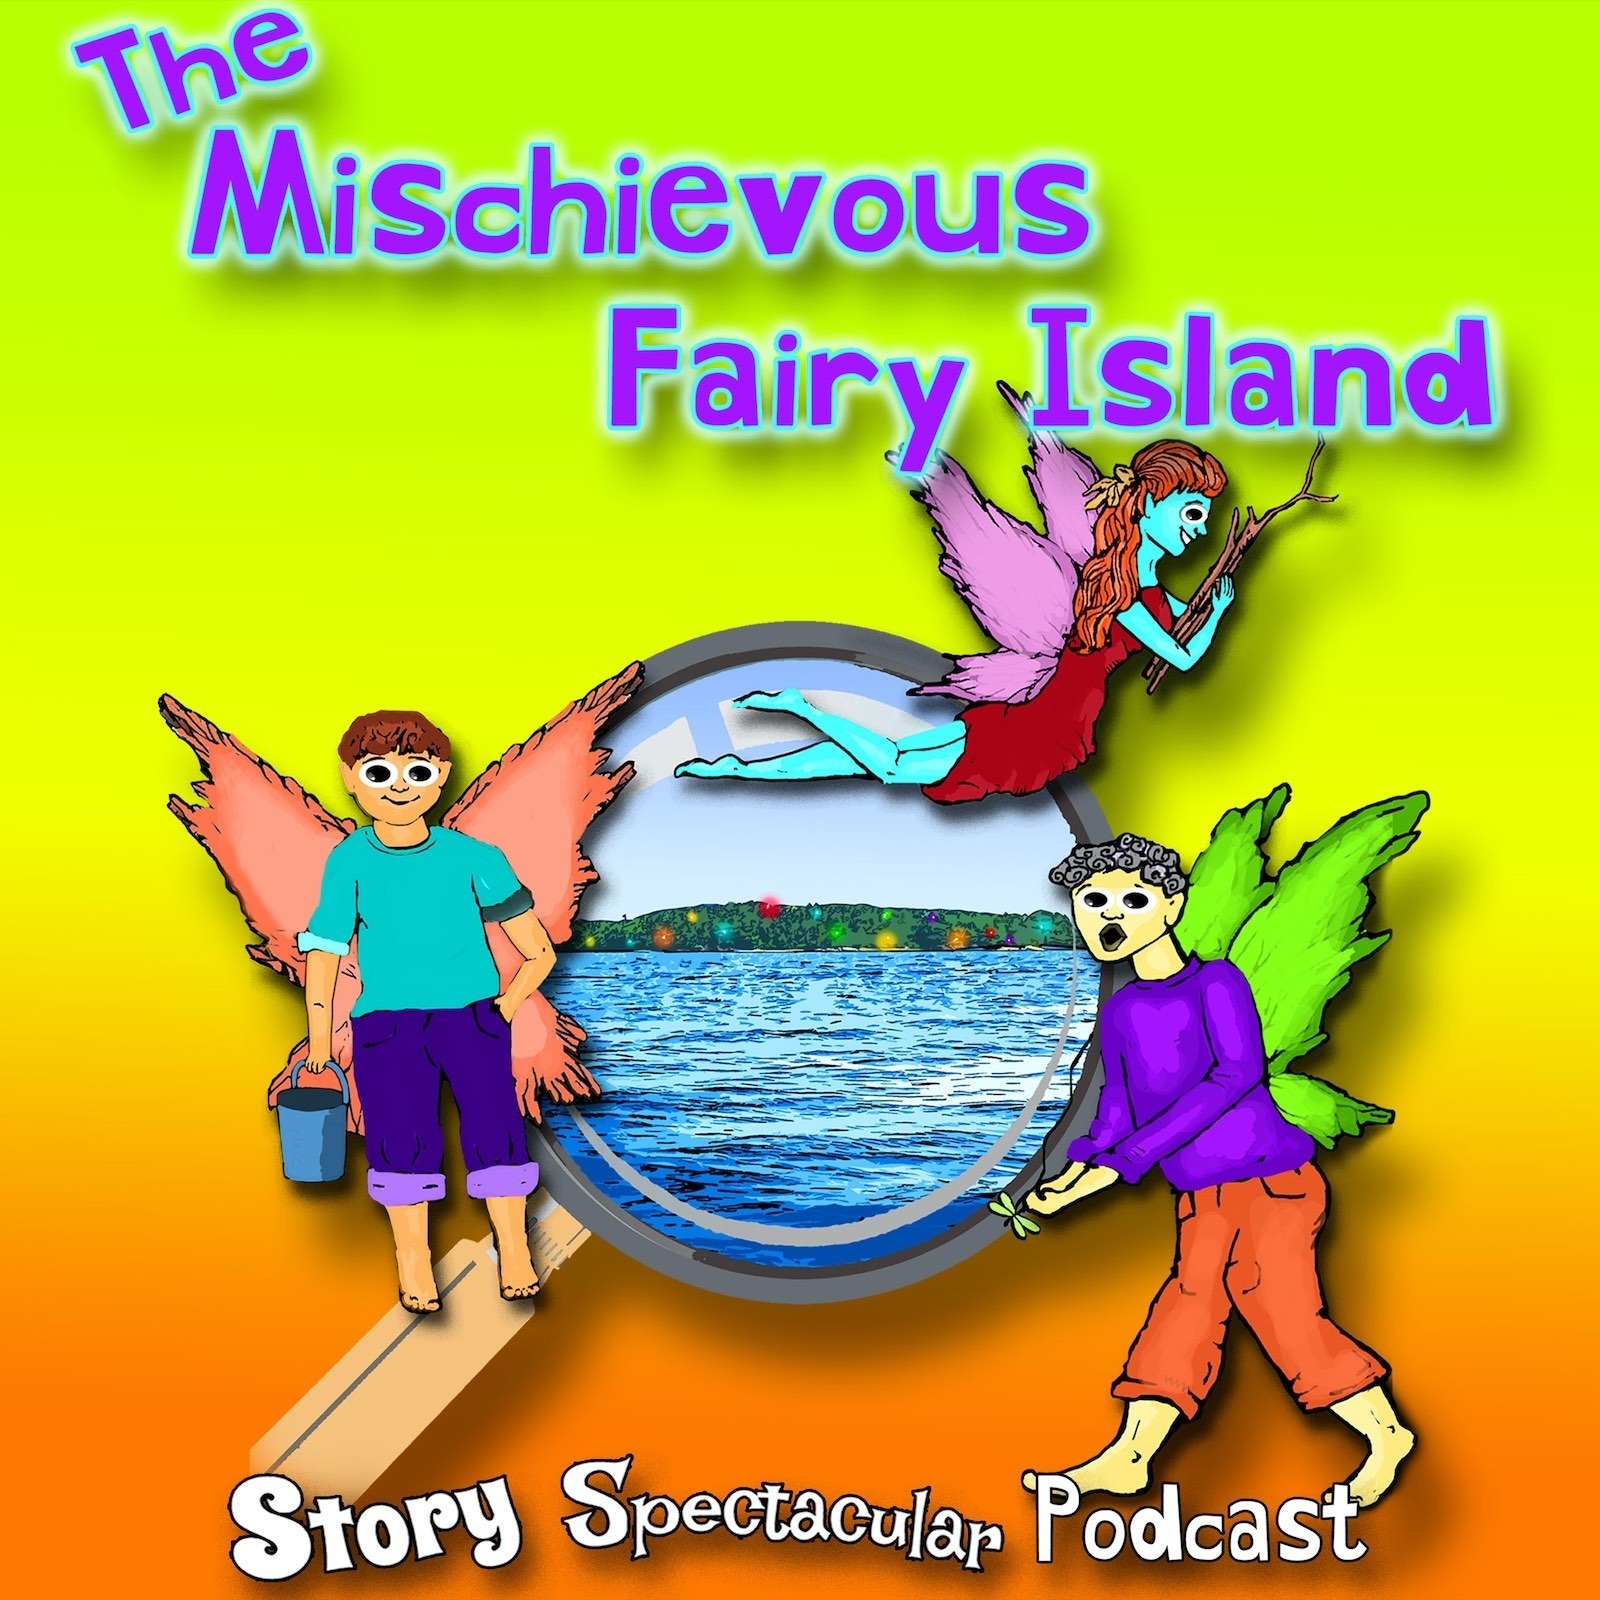 The Mischievous Fairy Island